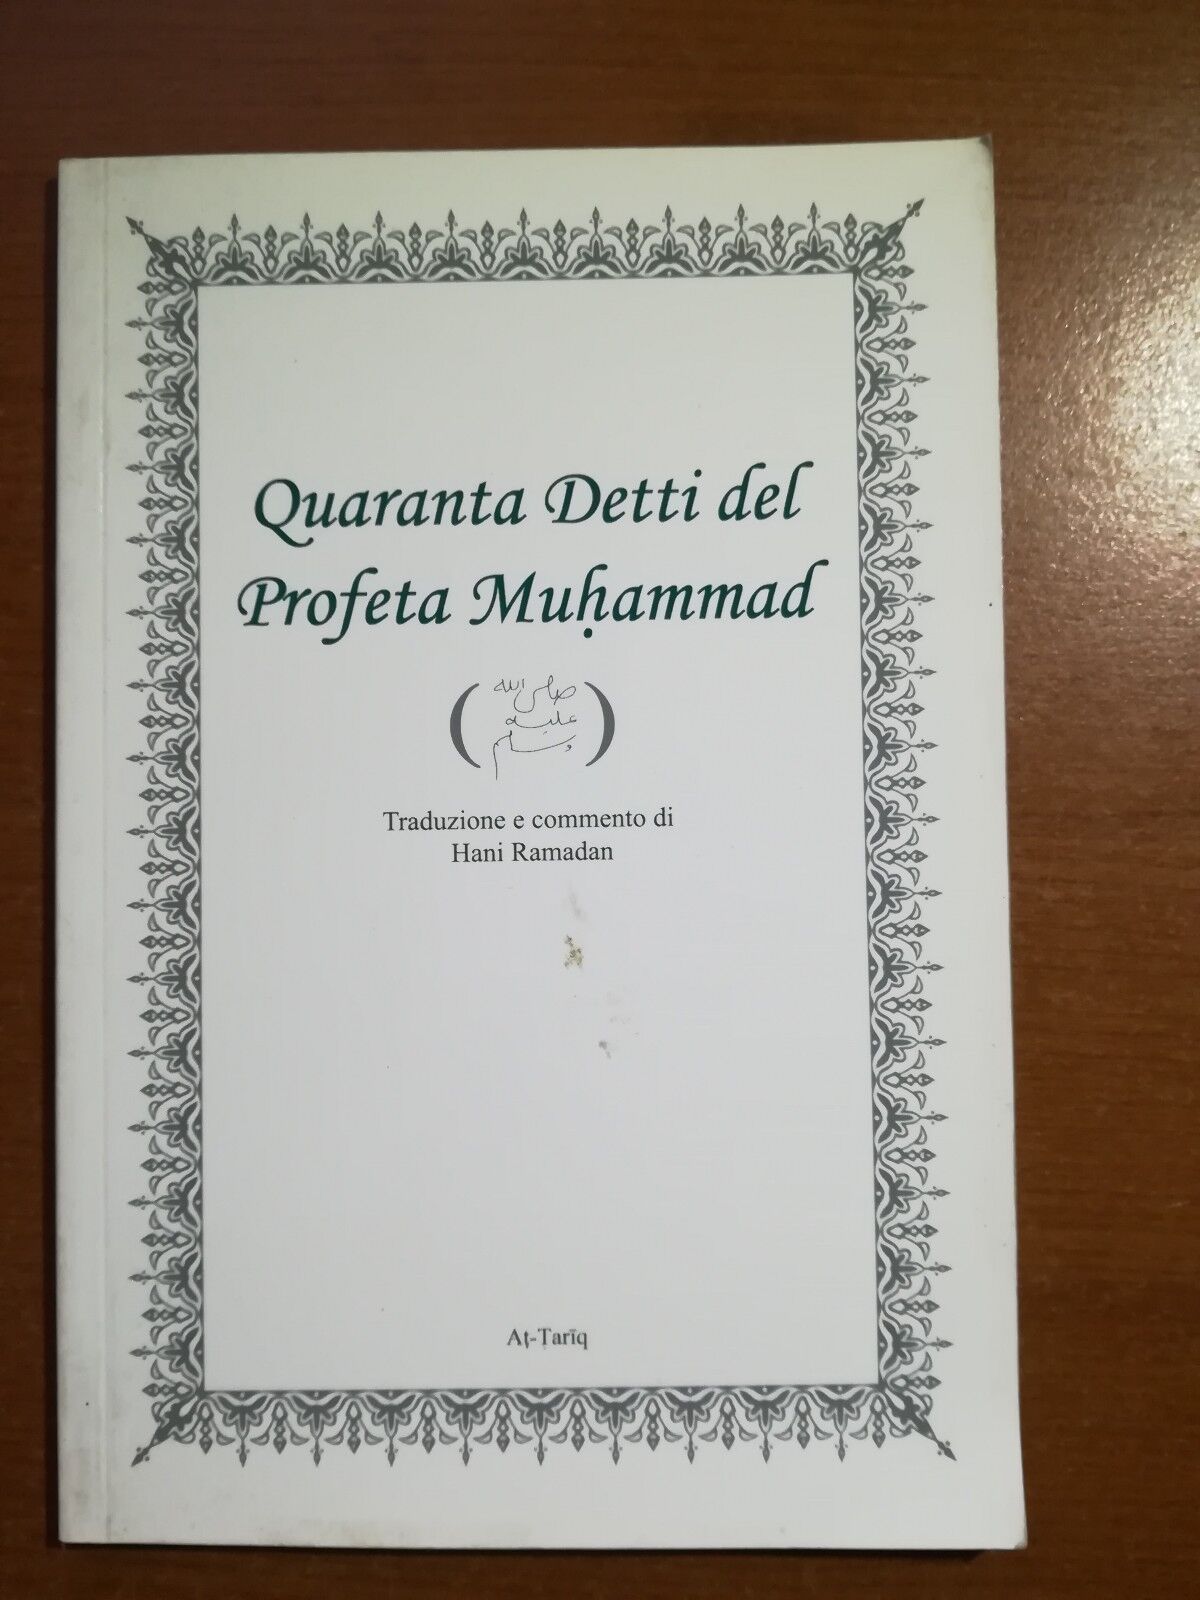 Quaranta detti del Profeta Muhammad - Hani Ramadan - At-tatiq - 2004- M